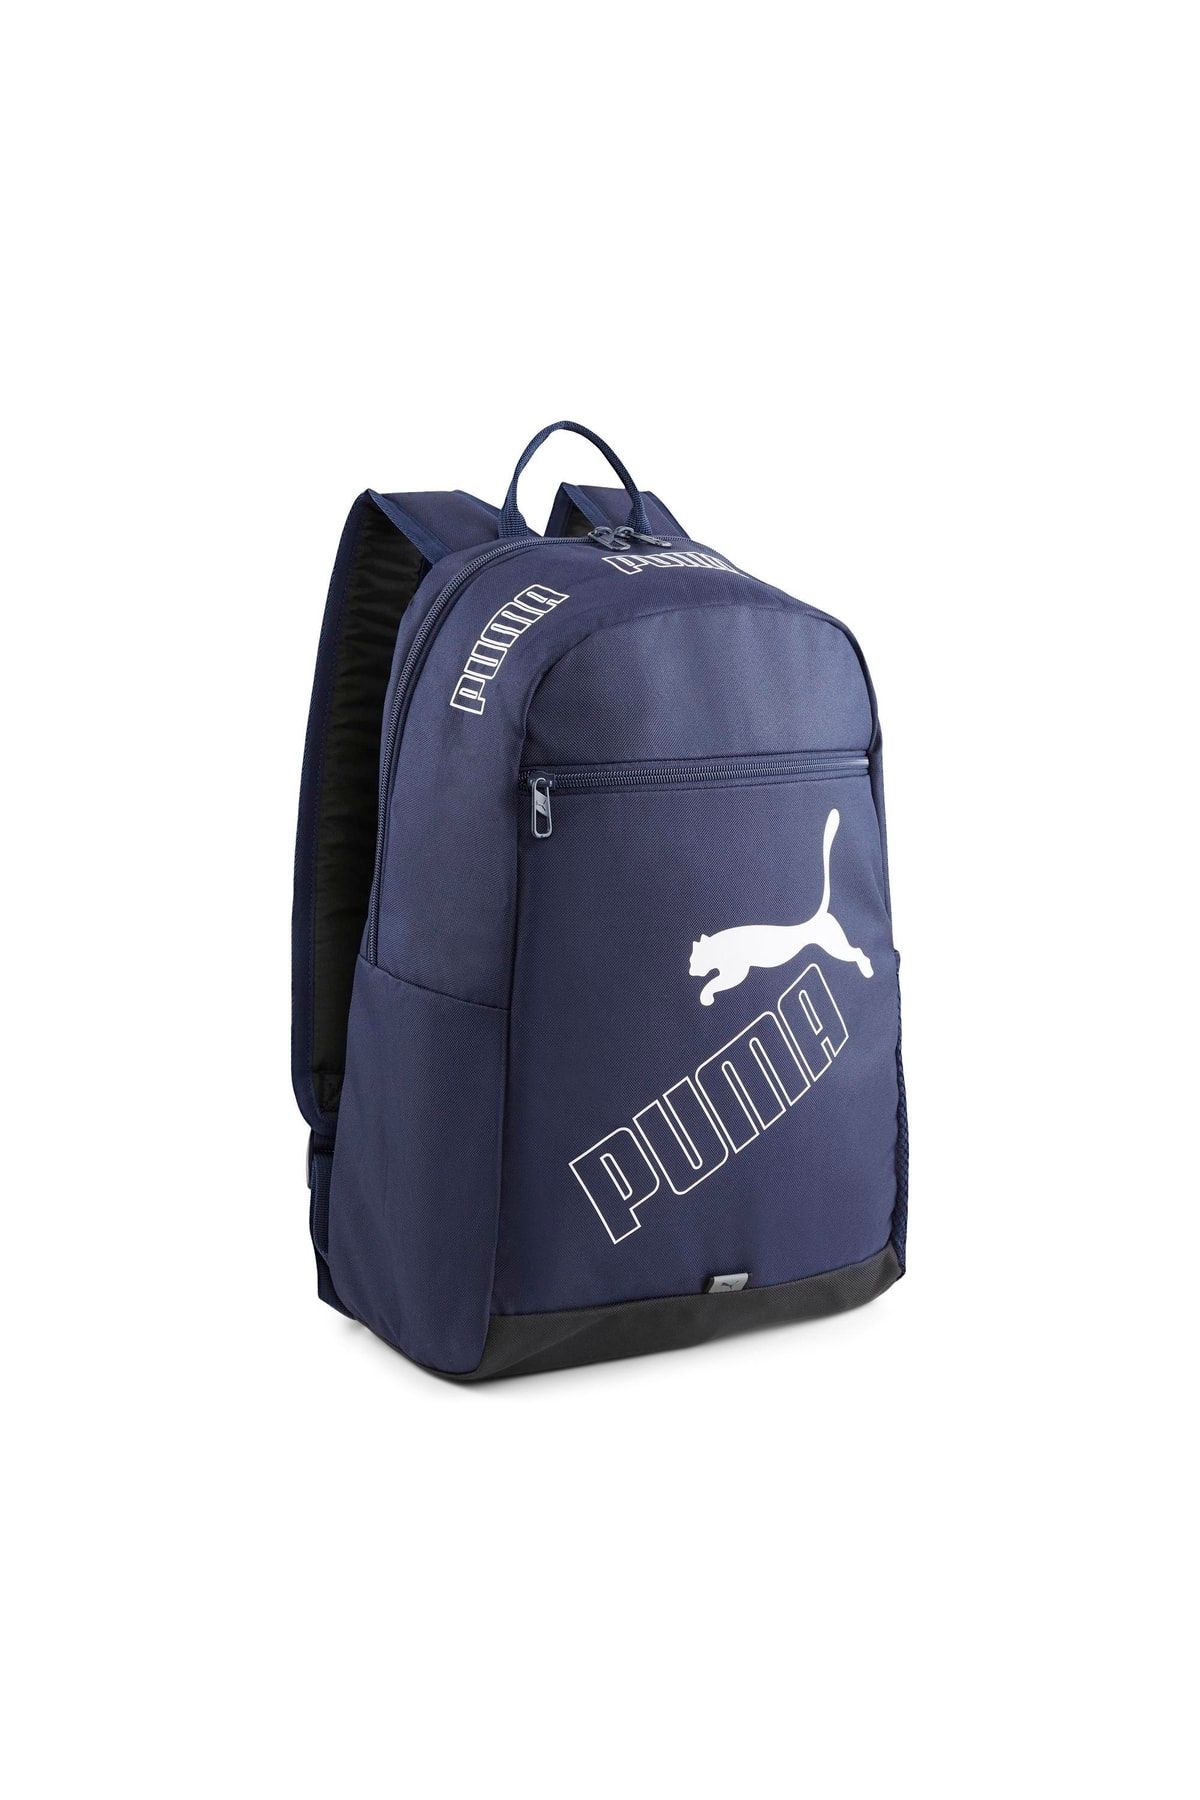 Puma Phase Backpack II07995202